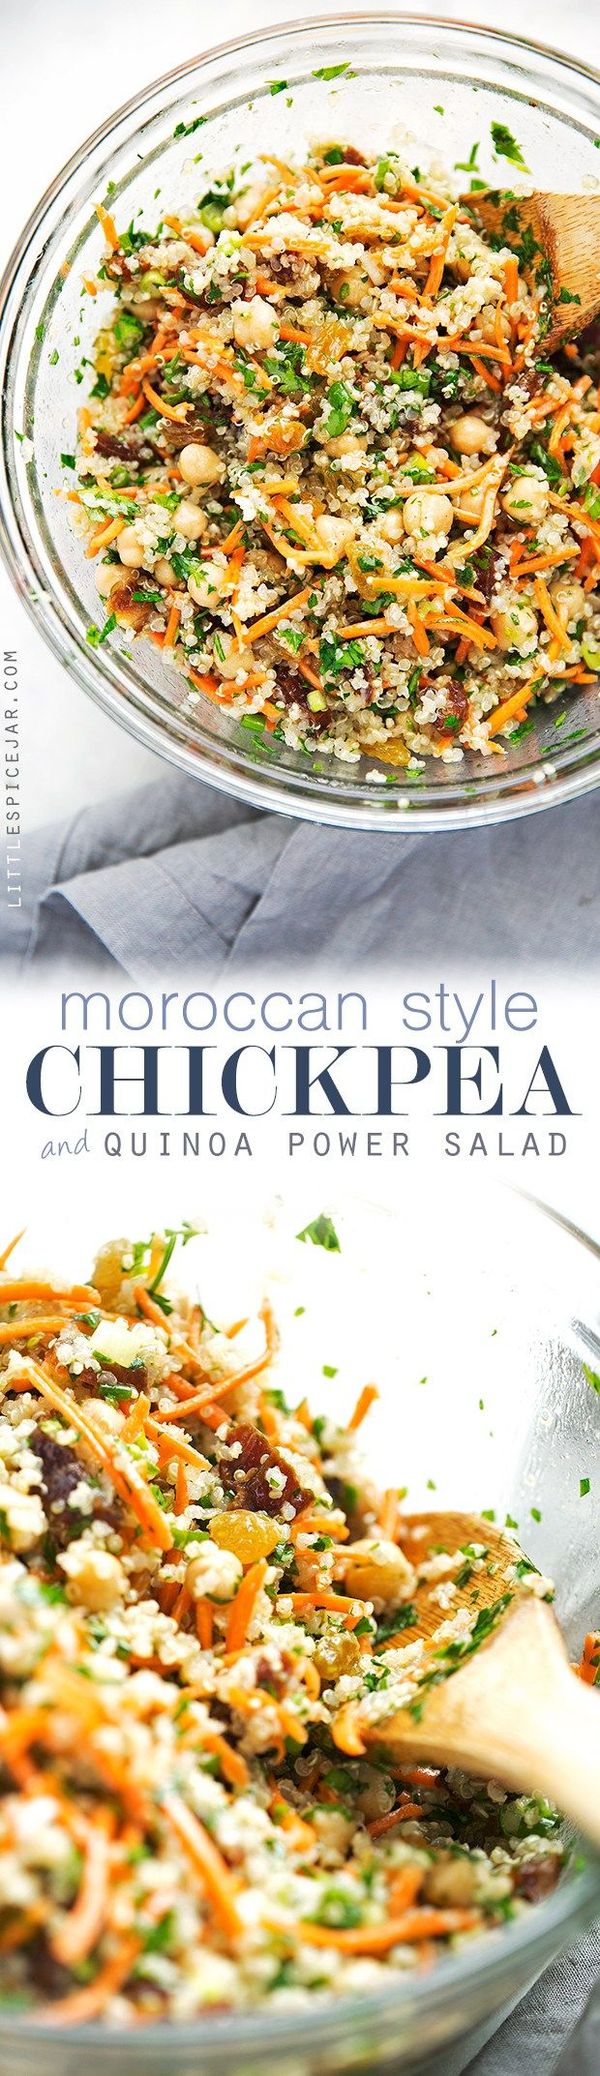 Moroccan Chickpea Quinoa Power Salad